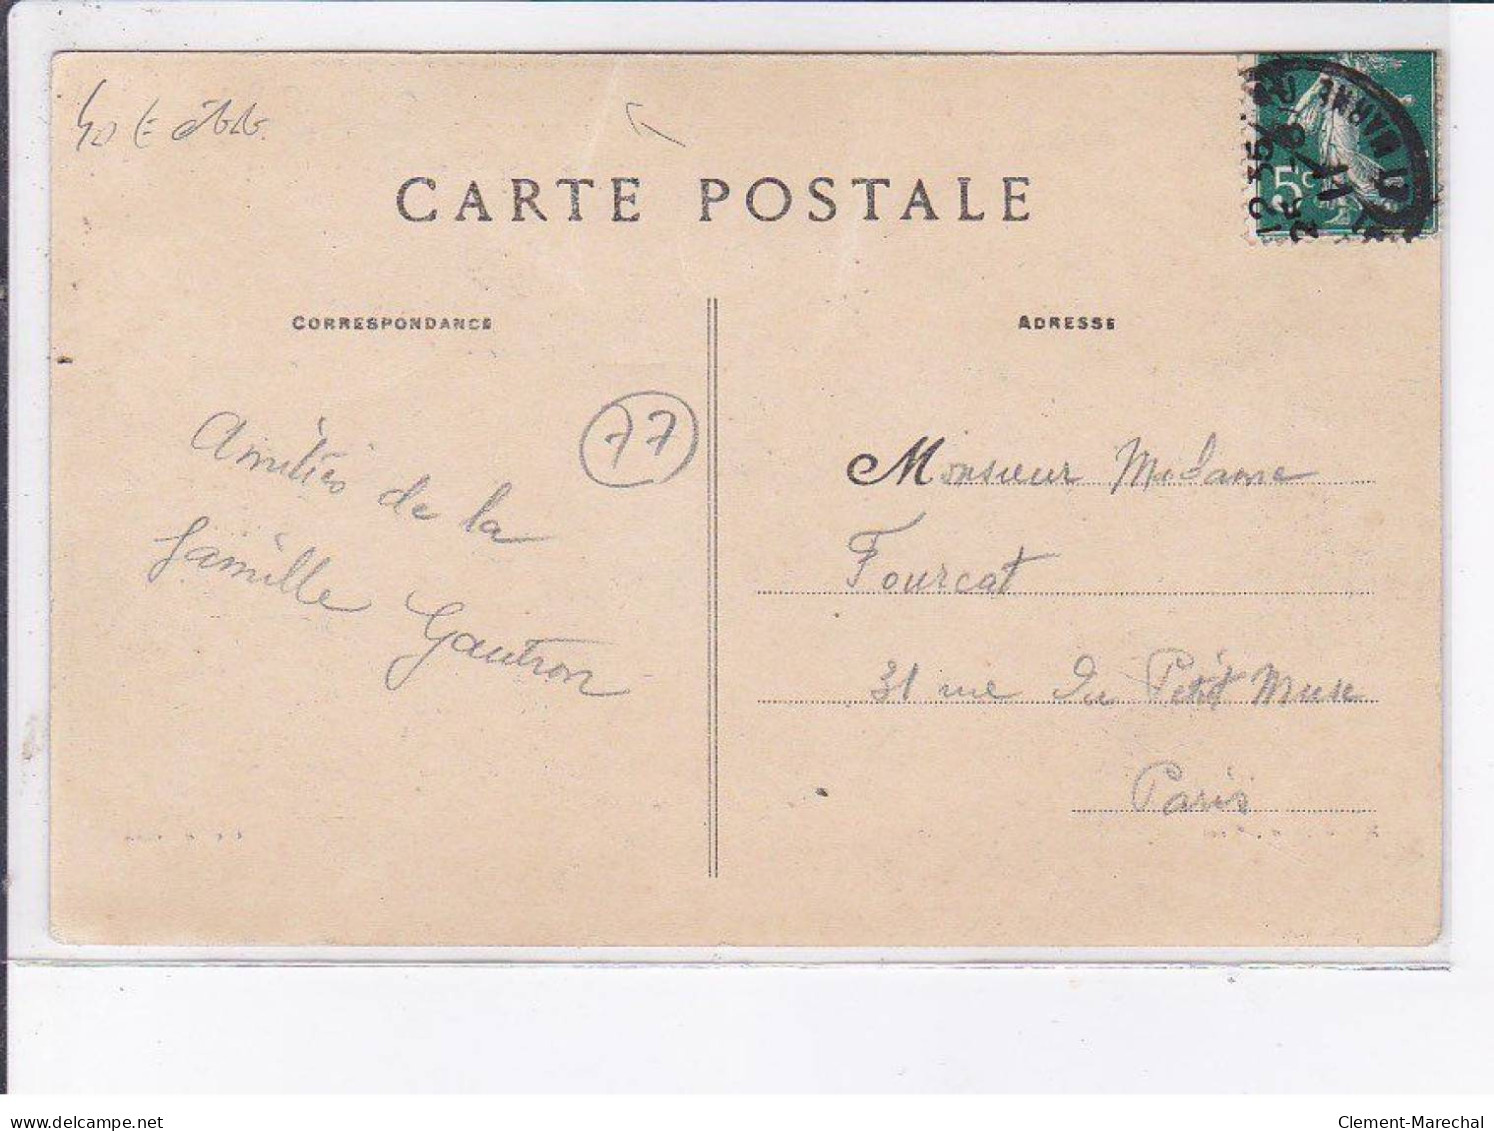 MORET-sur-LOING: Concours De Pêche Du 10 Juillet 1910, Le Champ De Mars Pendant Le Concert De Musique - état - Moret Sur Loing